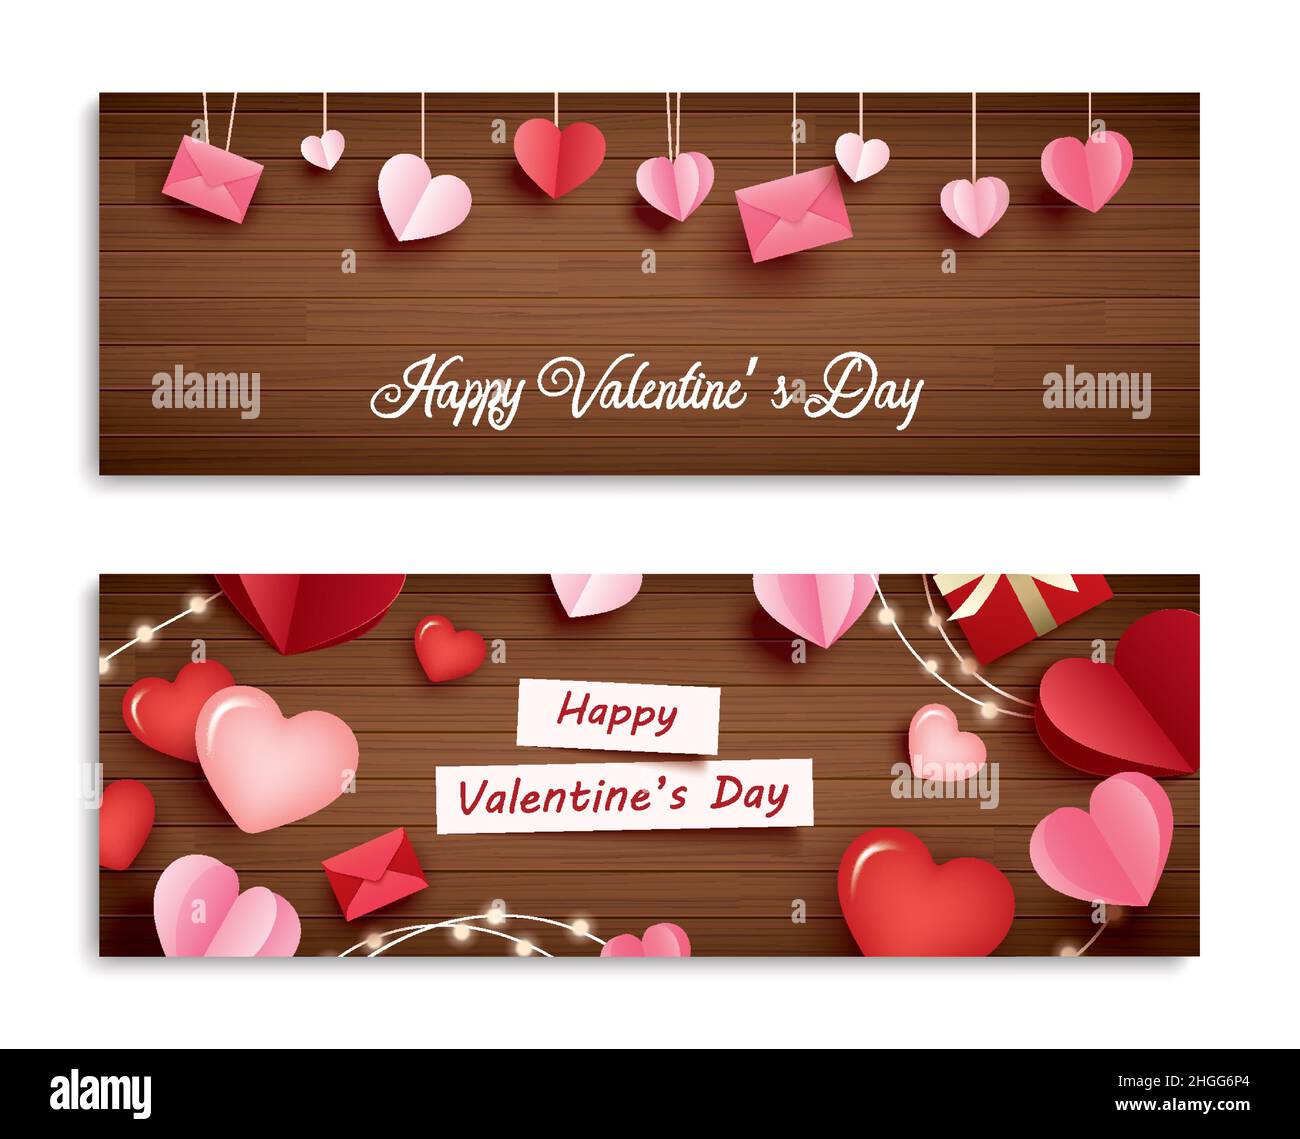 Valentinstag-Banner mit Herz auf Holzhintergrund und Typografie von Happy valentine's Day Text. Stock Vektor